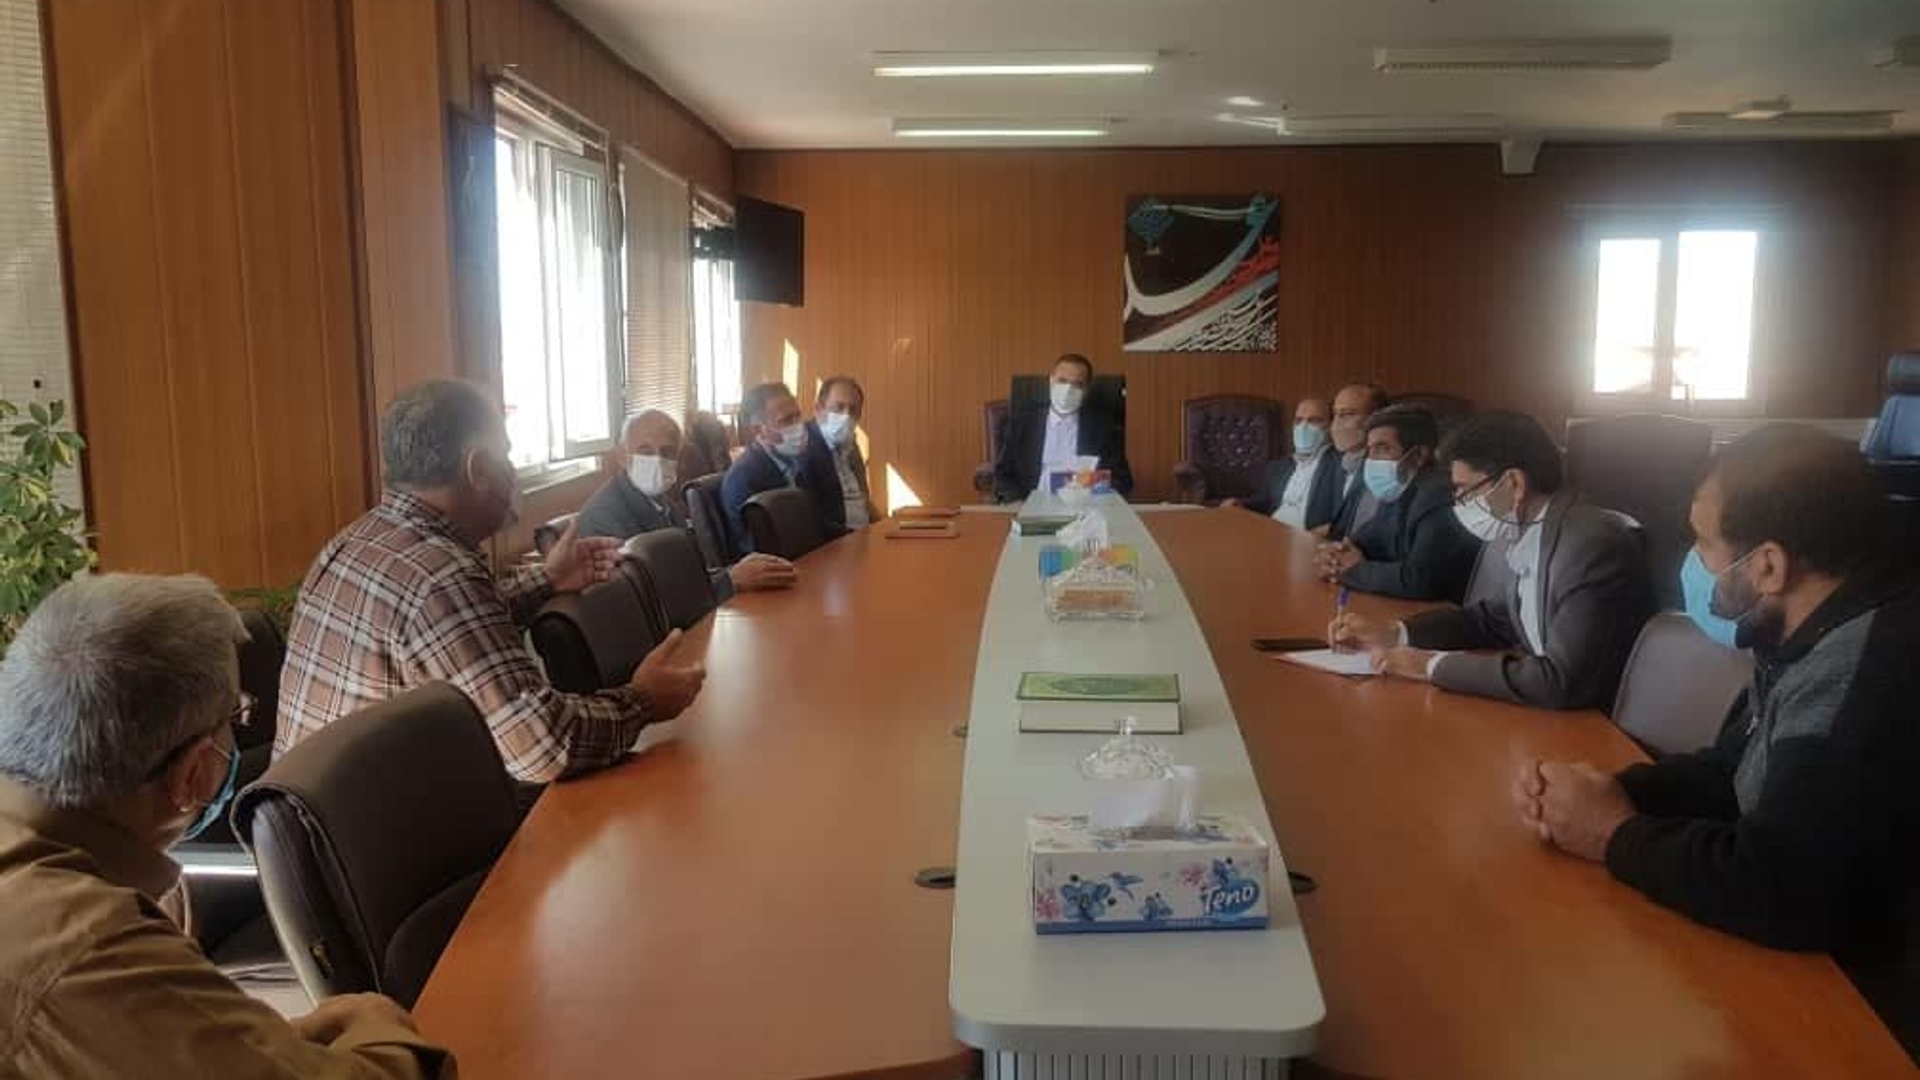 جلسه هماهنگی به منظور جانمایی چاه رزرو آب شهر تفرش در دفتر حاج علی بیگی فرماندار تفرش برگزار شد.